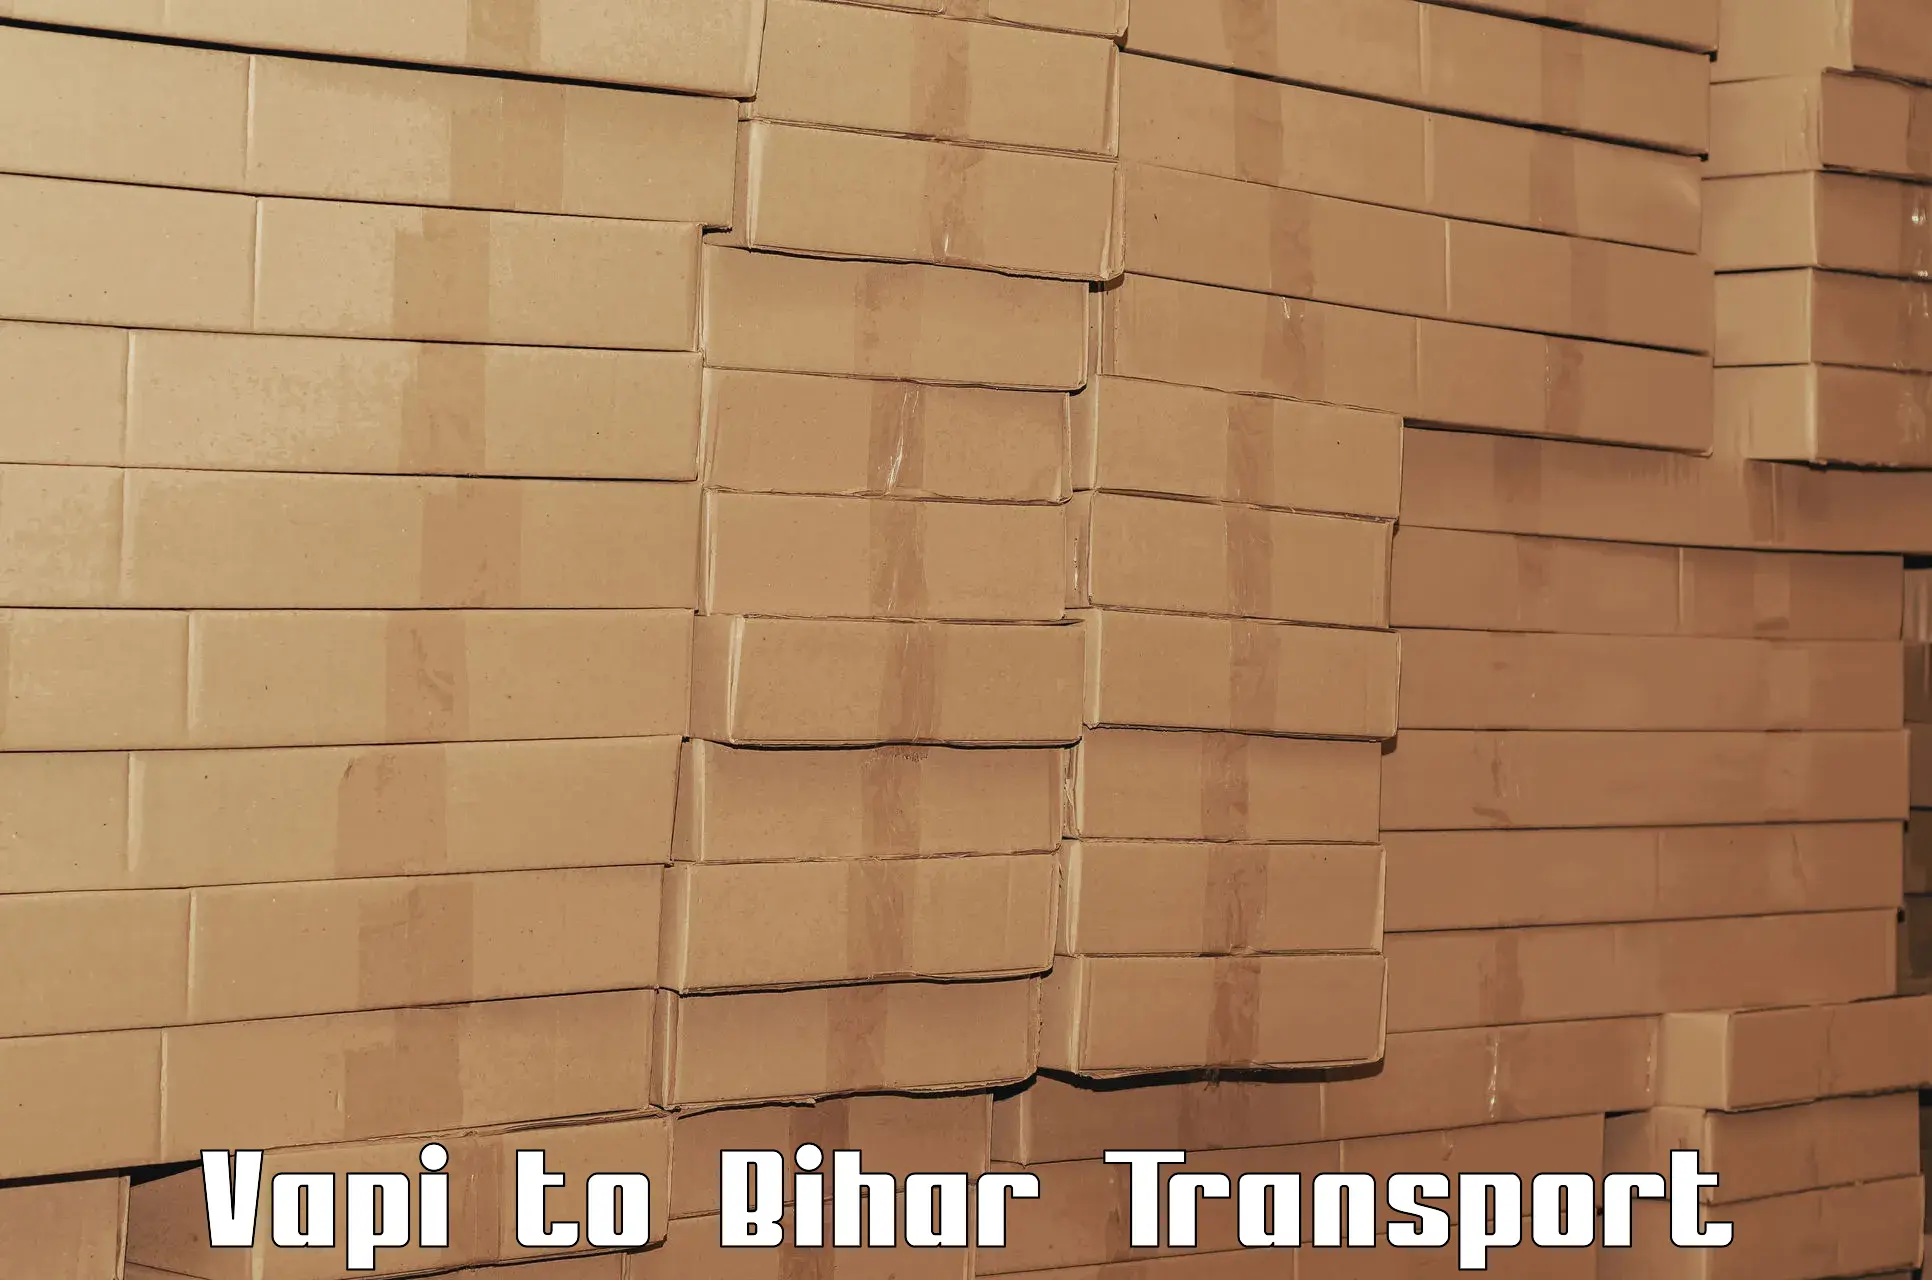 Daily transport service in Vapi to Hajipur